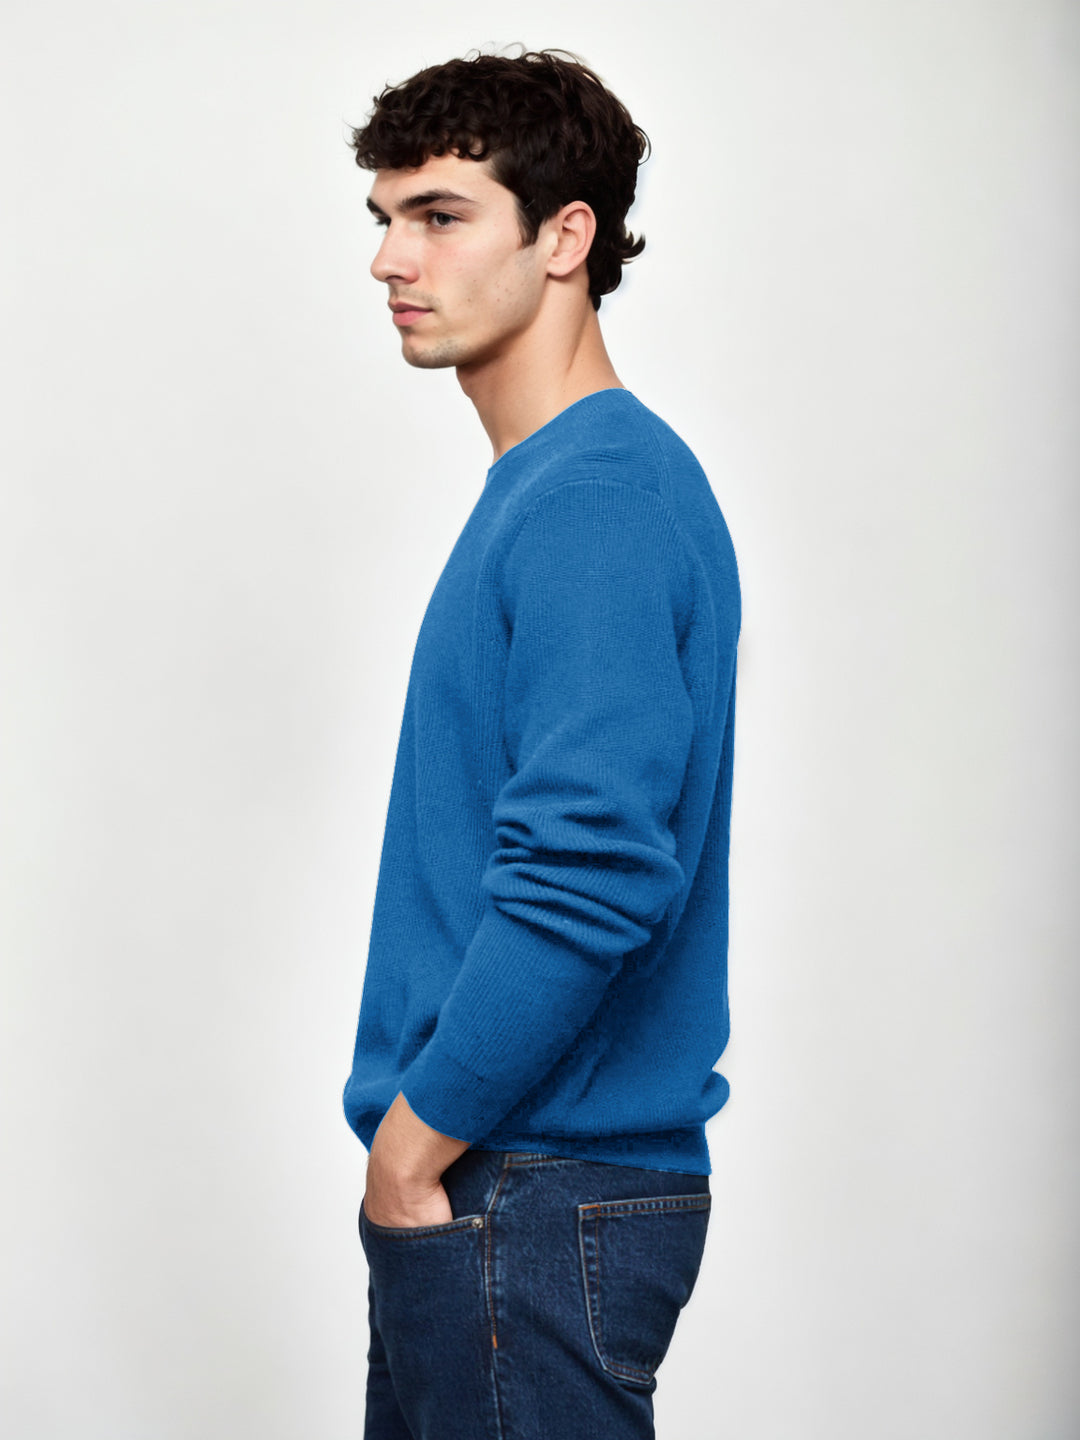 Hemsters Royal Blue Knitted Full Sleevs Sweatshirt For Men